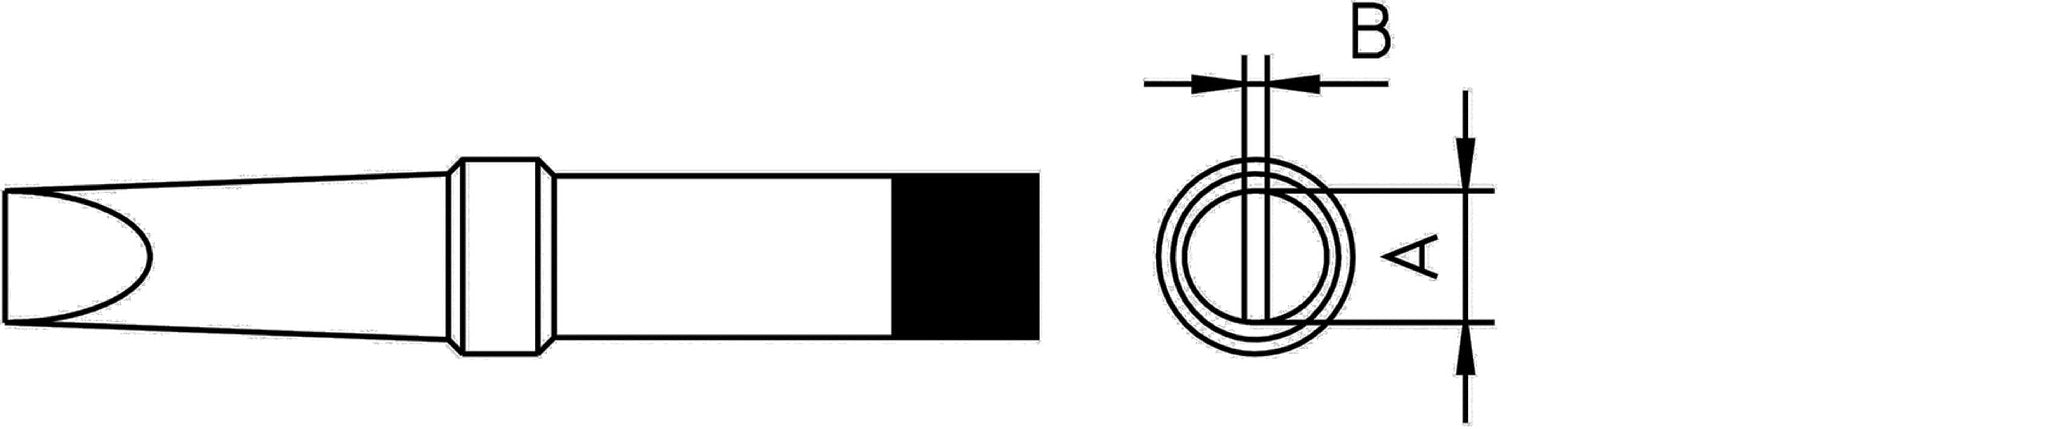 Soldeerpunt 0,8 x 0,4 mm 370 ˚C Weller